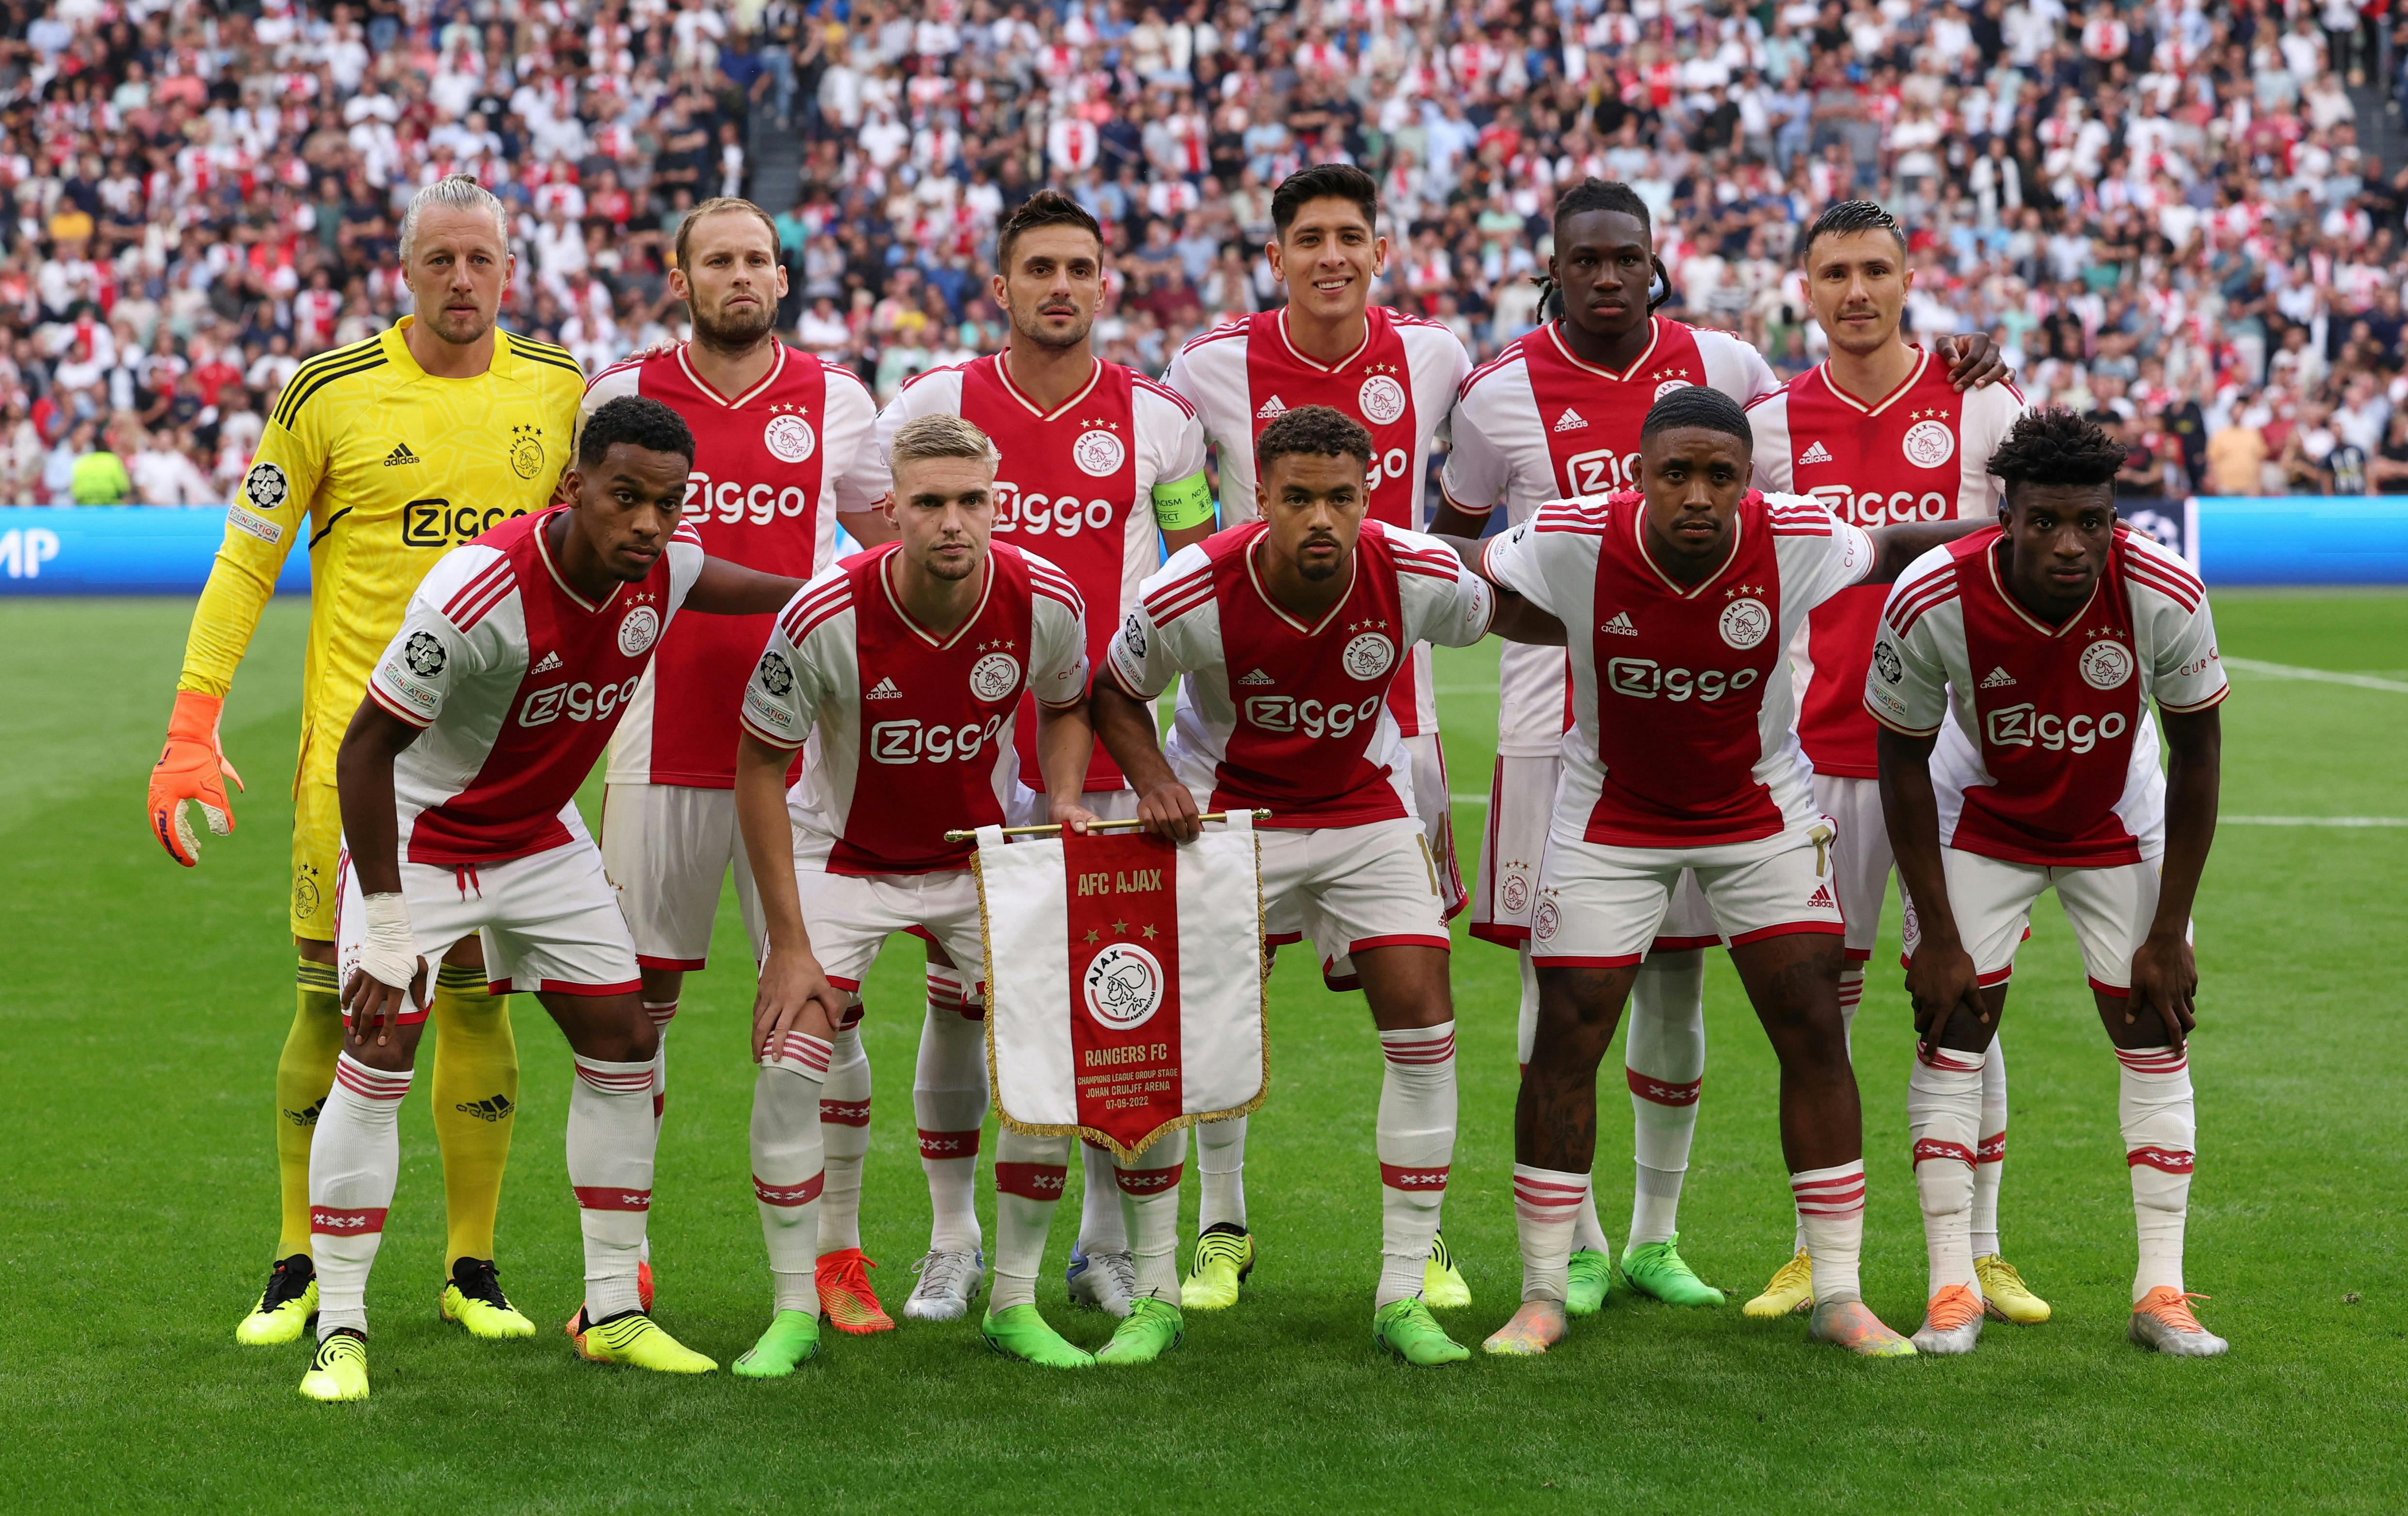 Soccer-Ajax shine in Champions League despite high-profile 